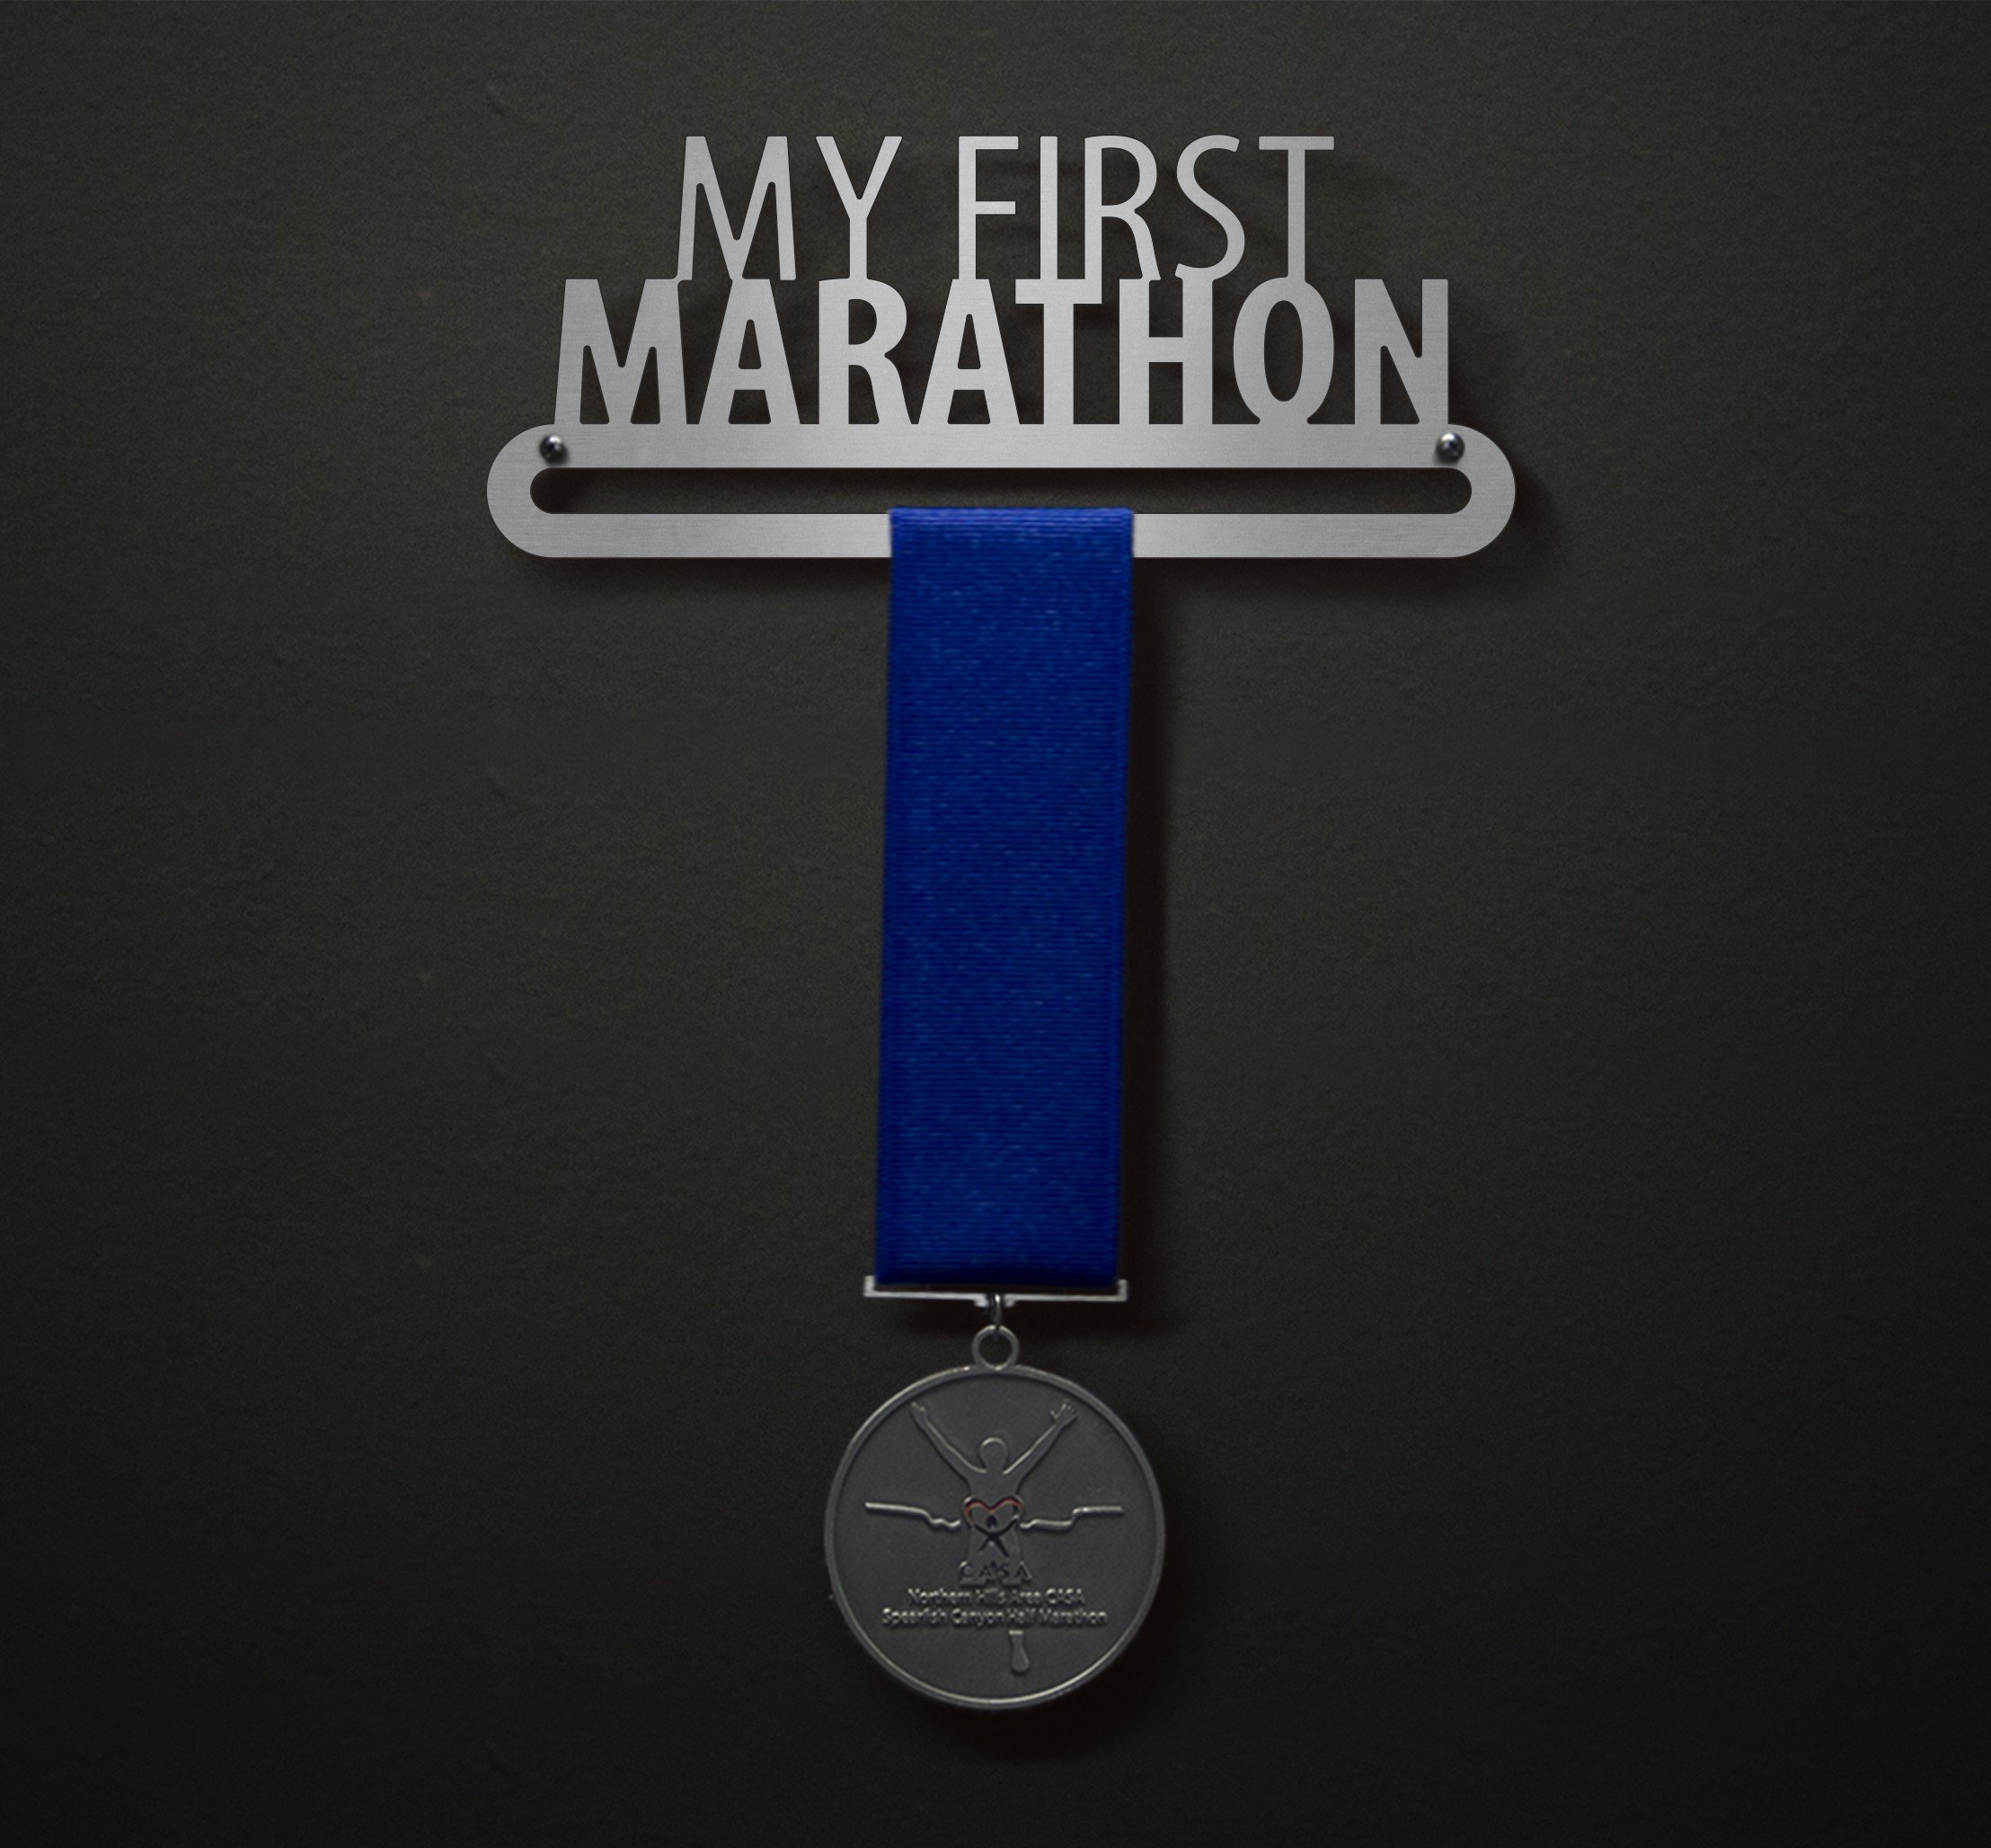 My First Marathon - Myriad over Myriad Bold